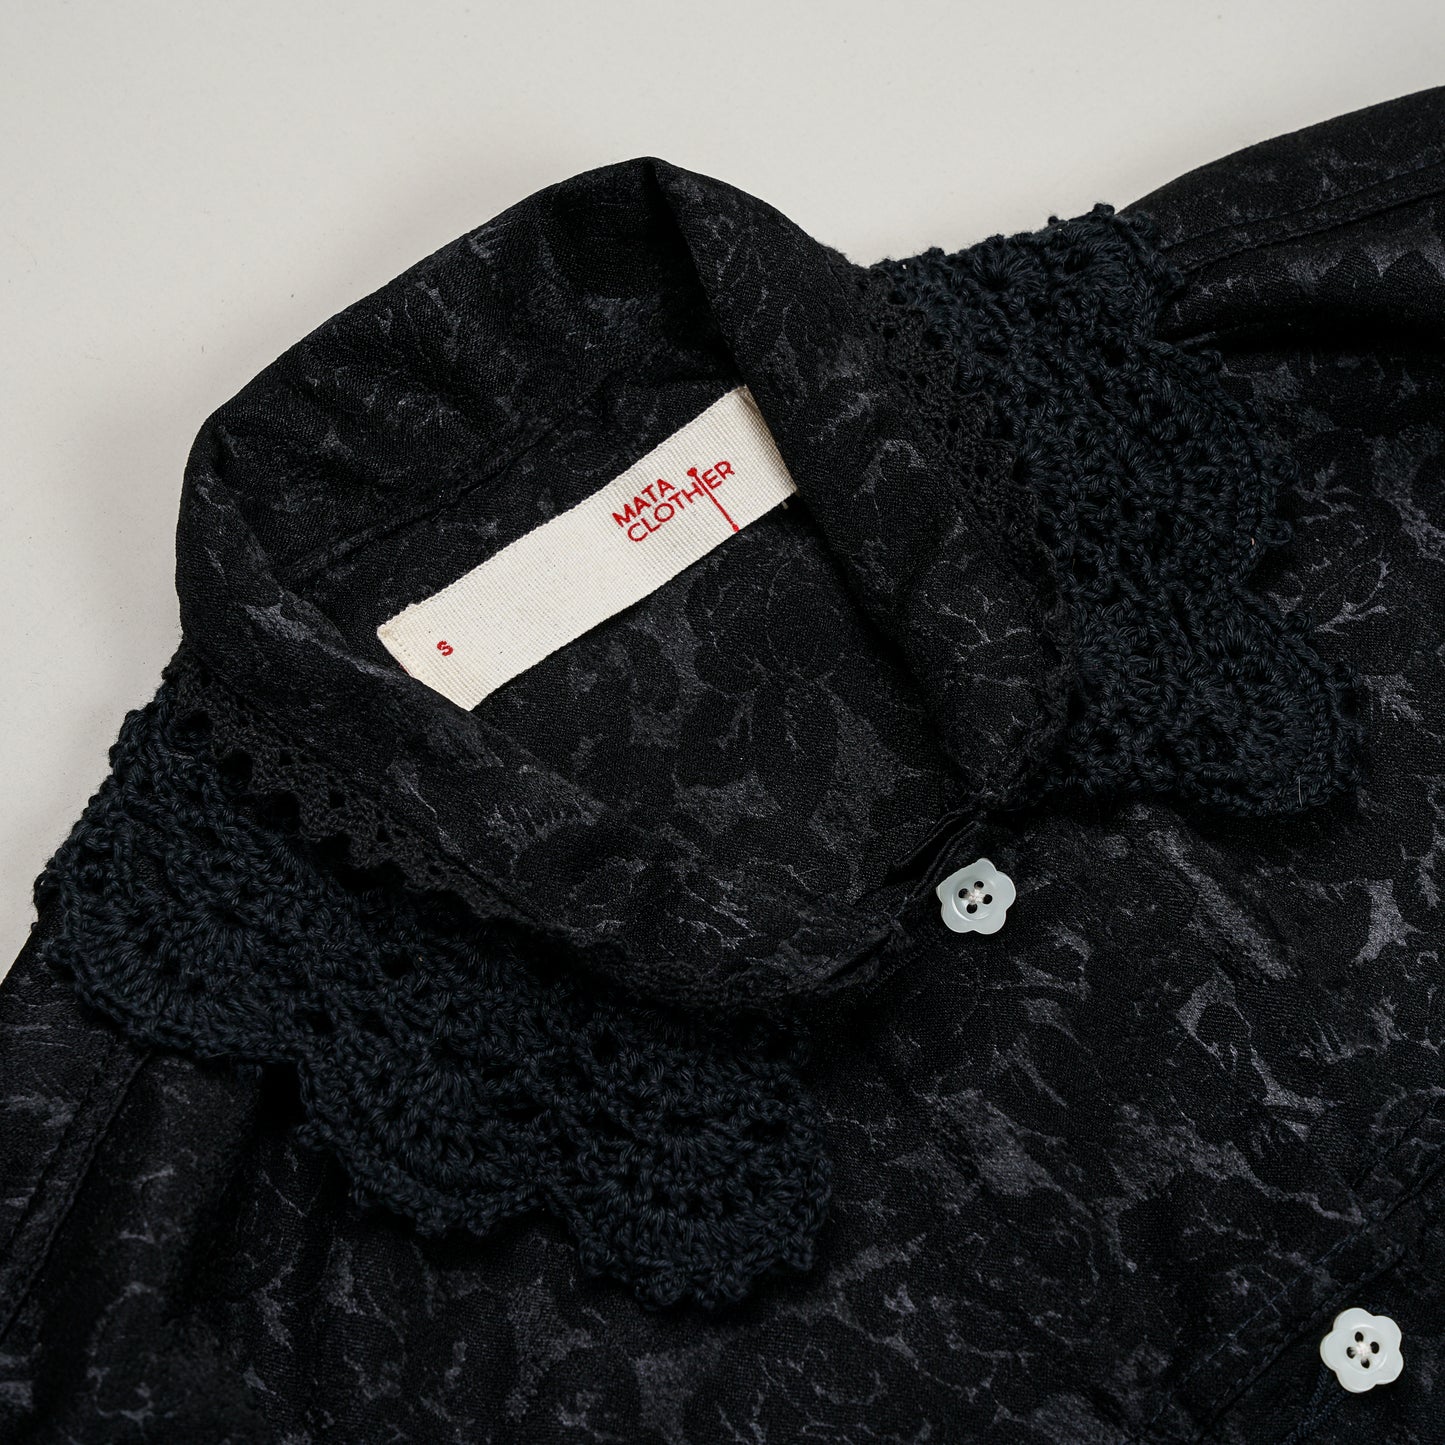 Emiria Jacket Black Petal  ✺ MATA CLOTHiER